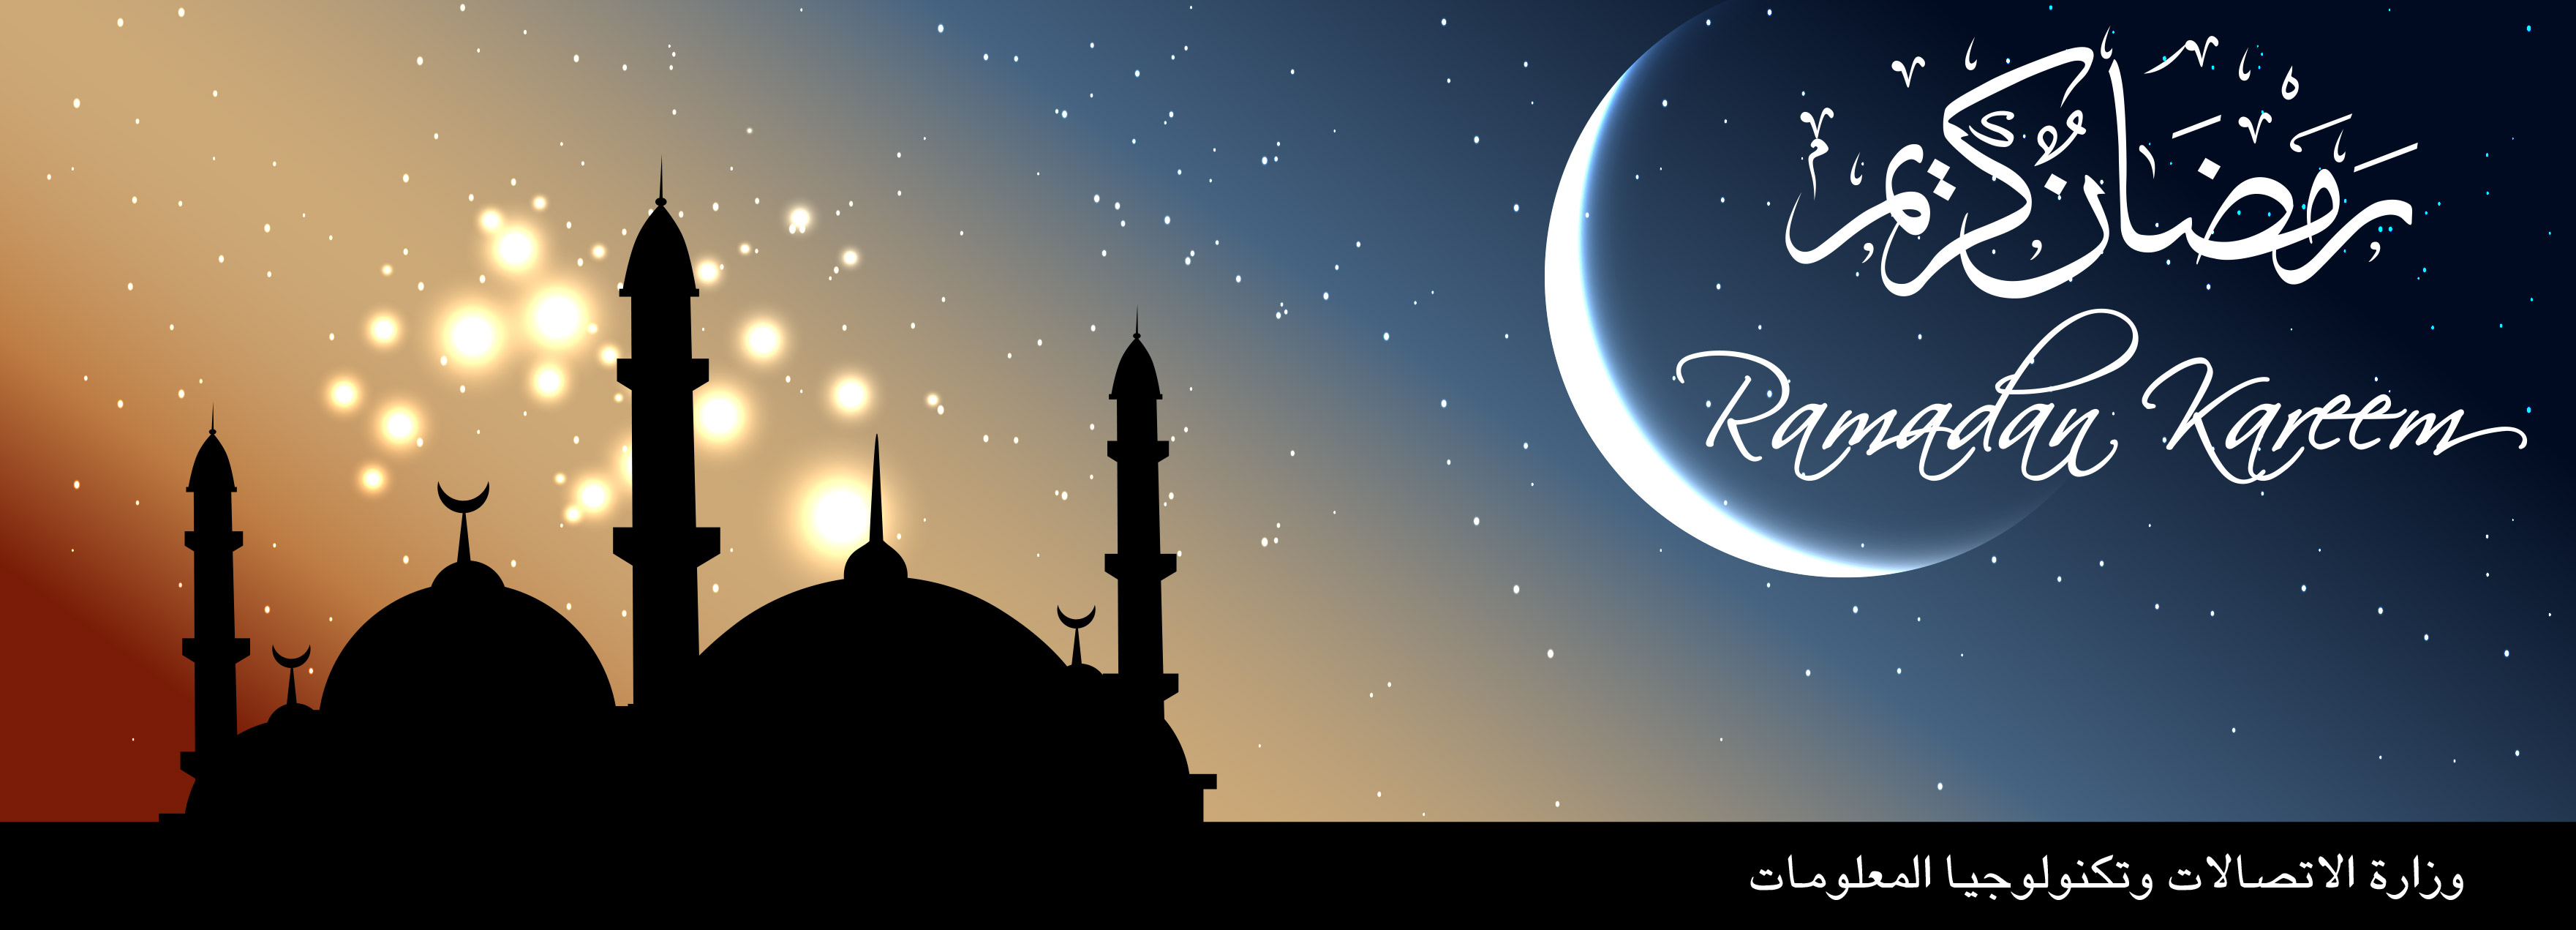 Best Ramadan Kareem - 1st Friday Of Ramadan - HD Wallpaper 